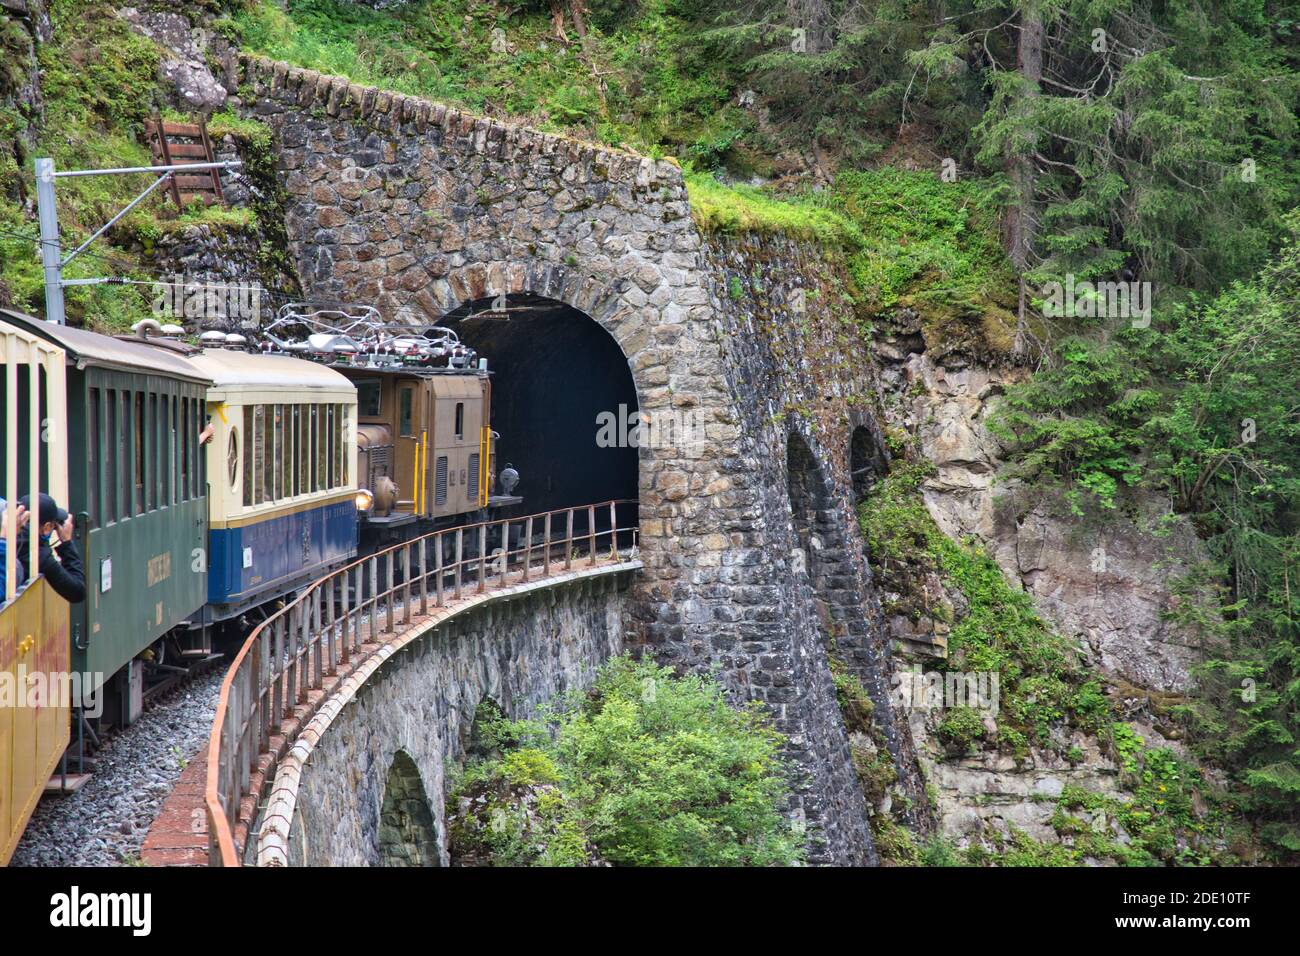 Nostalgische Bahnfahrt in den schweizer Bergen in einen Tunnel auf der Bahnlinie davos - filisur. Locomative in den Schweizer Bergen Stockfoto